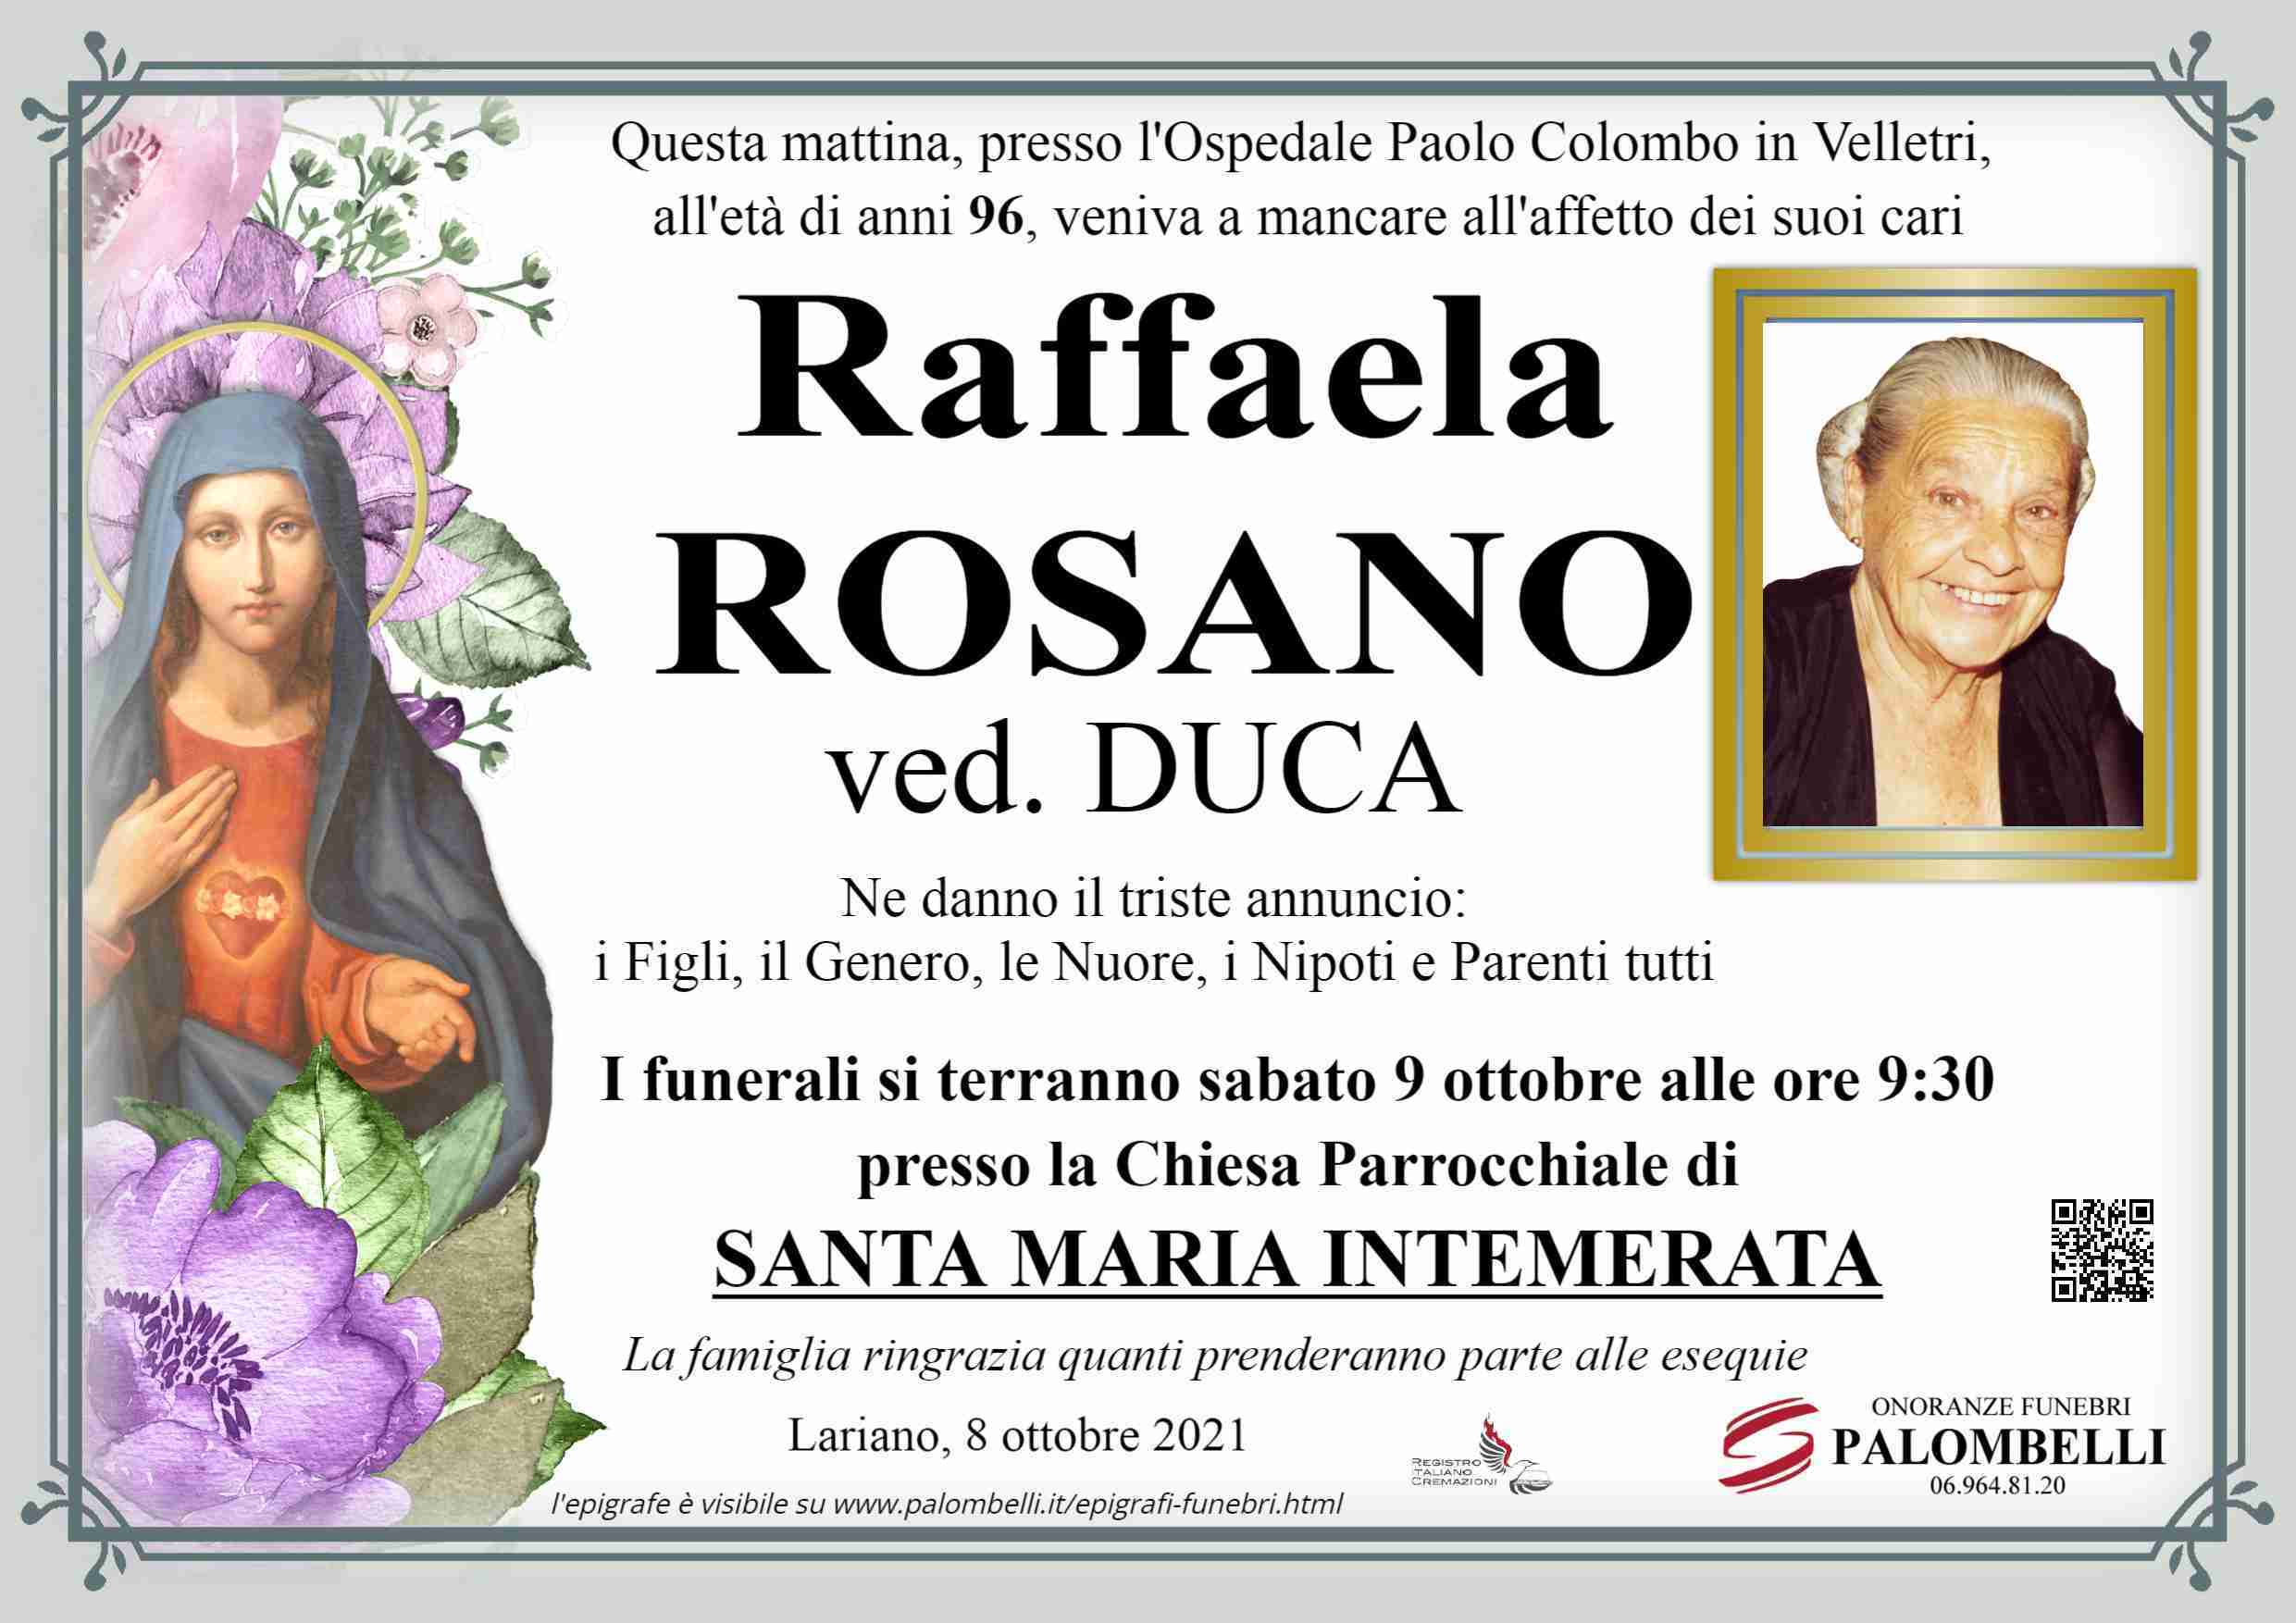 Raffaela Rosano